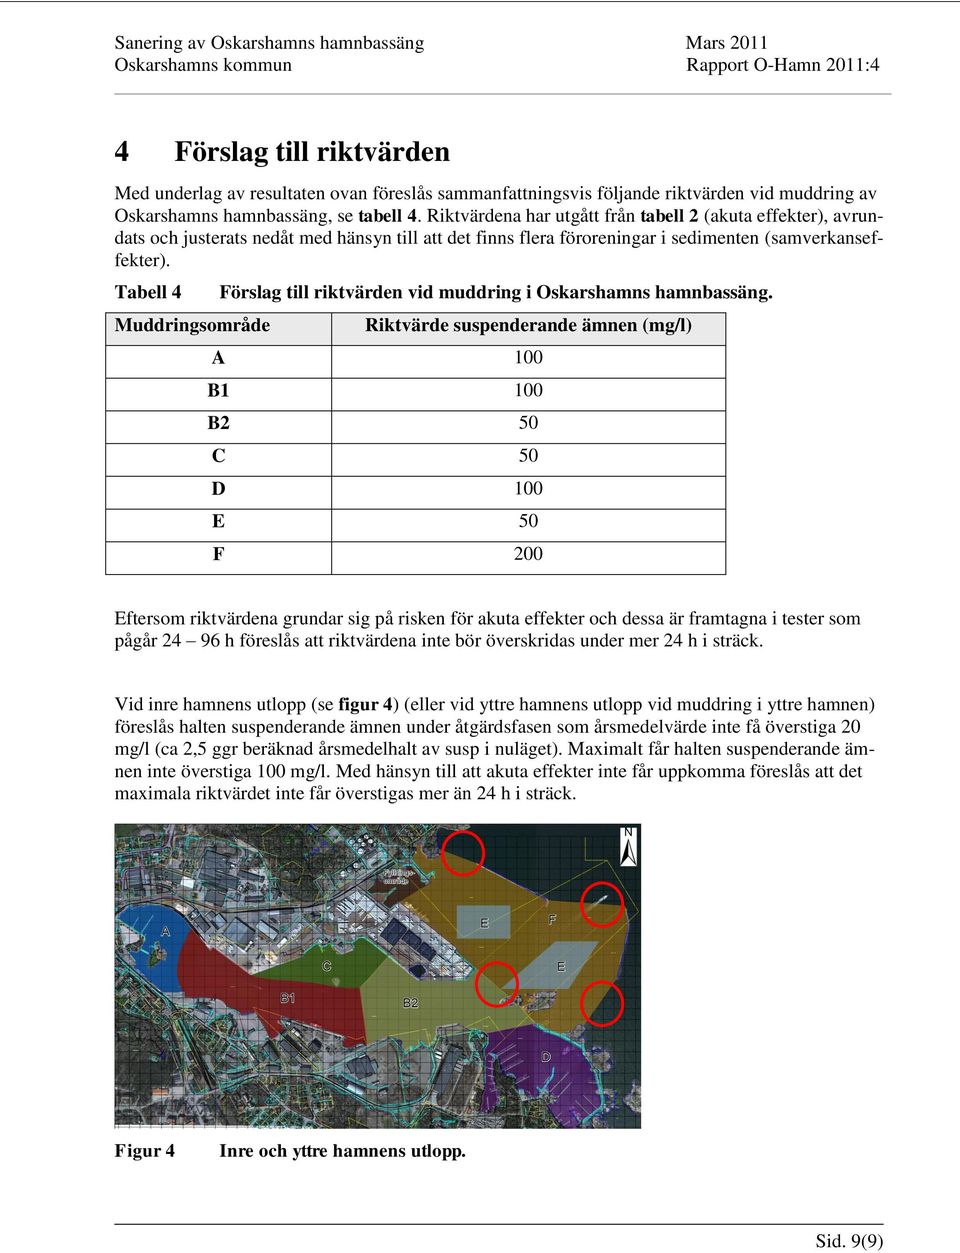 Tabell 4 Muddringsområde Förslag till riktvärden vid muddring i Oskarshamns hamnbassäng.